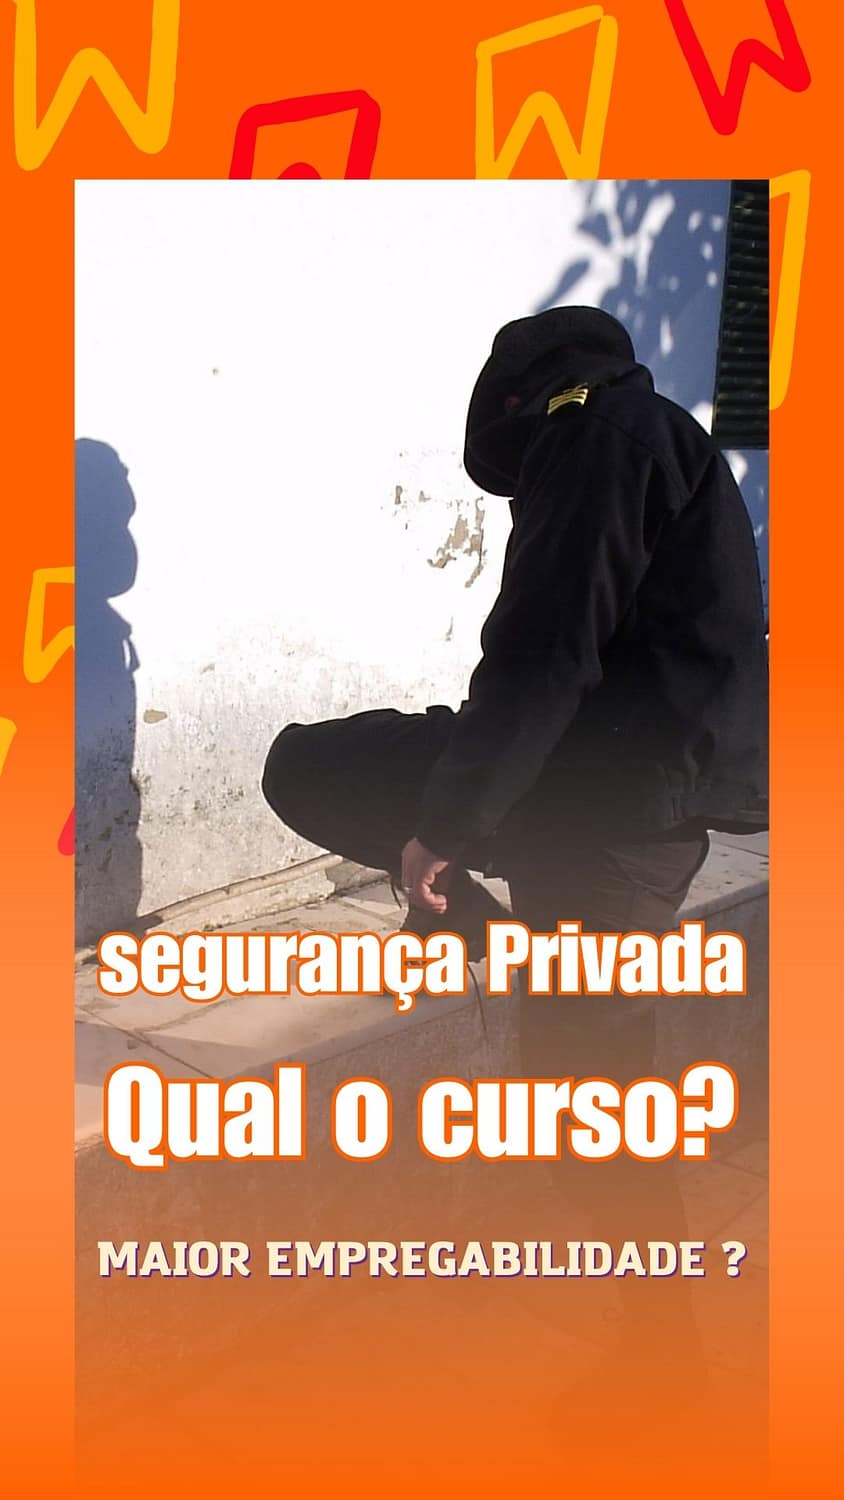 Que curso vigilante devo fazer Portugal?